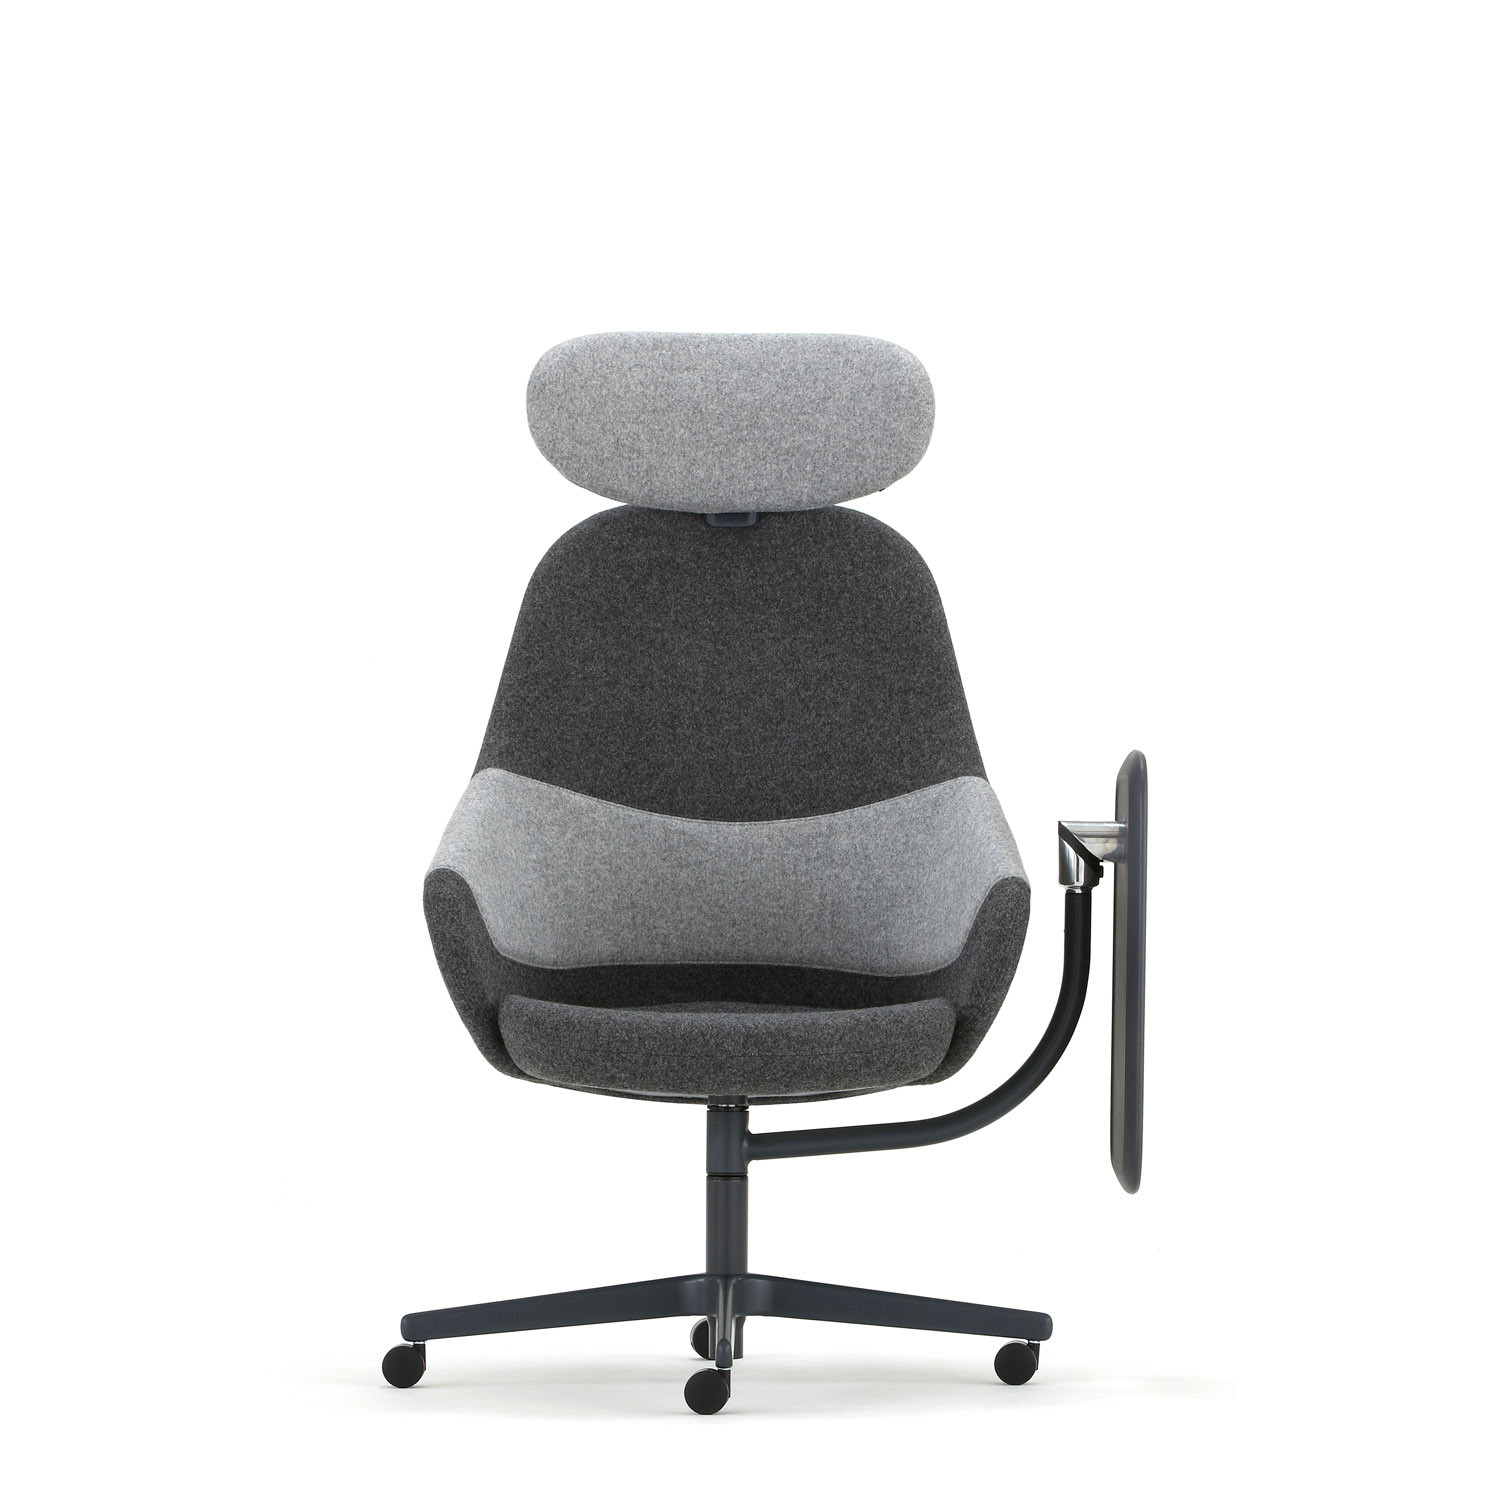 Ad-Lib Work Lounge Chair